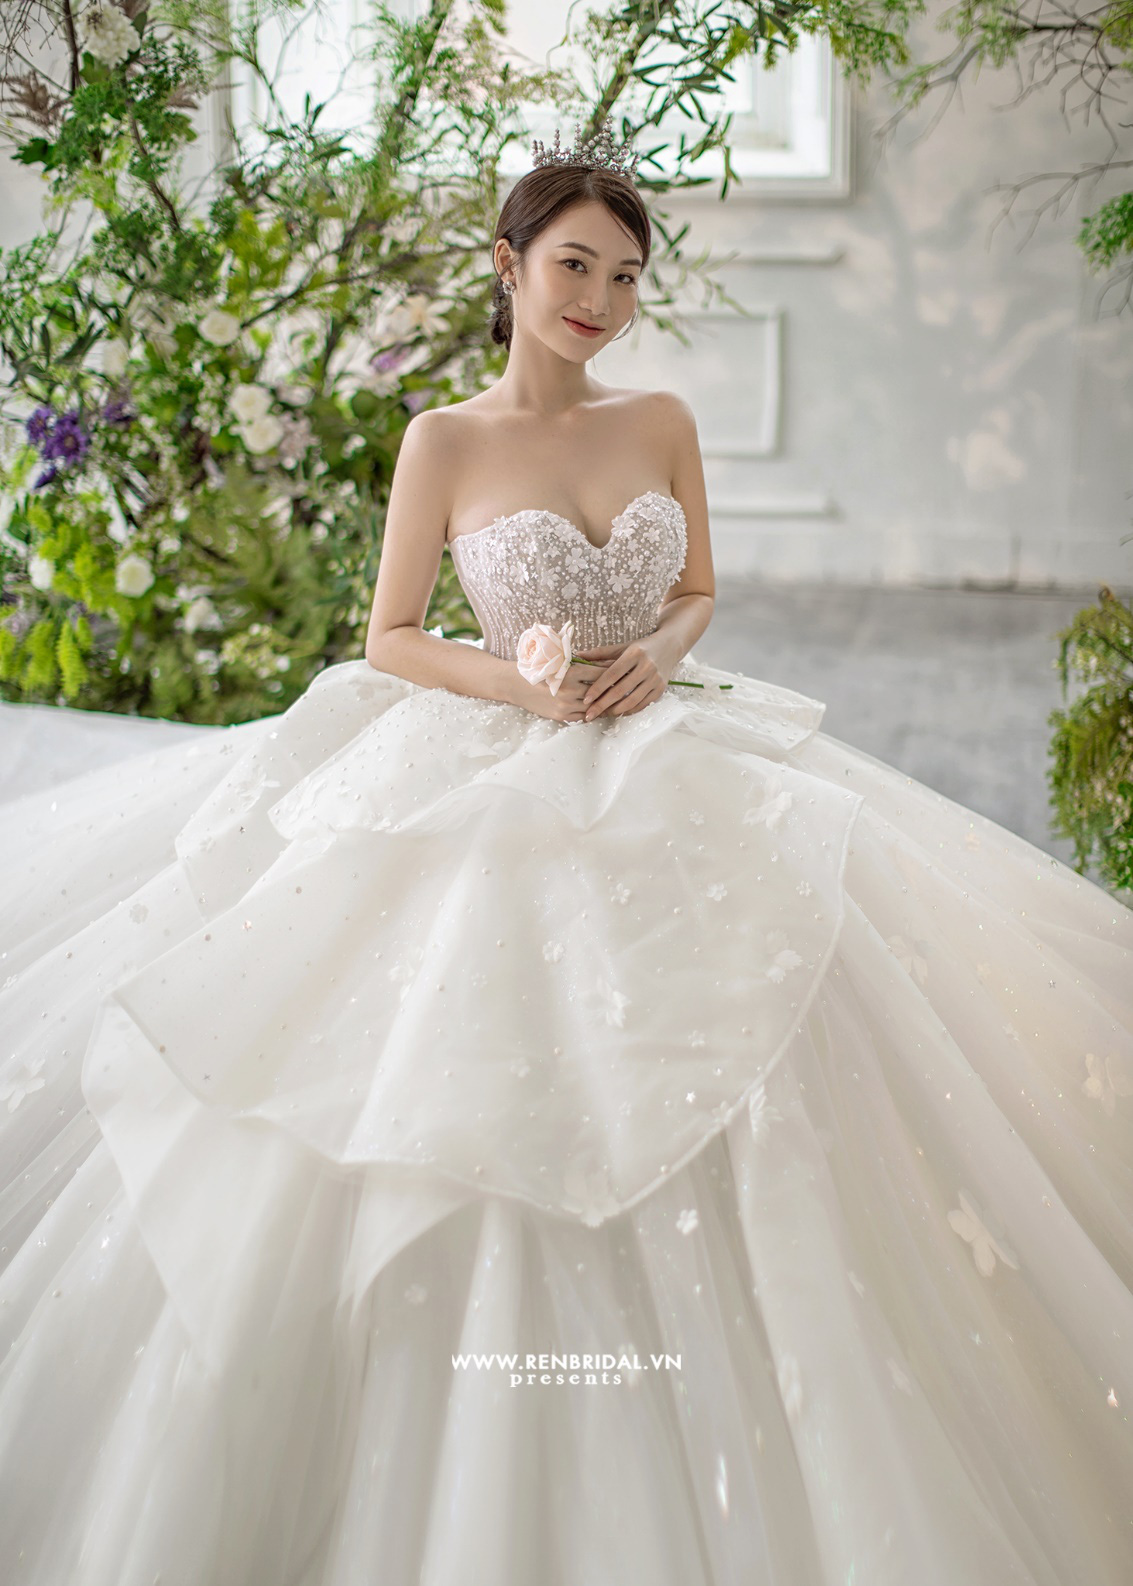 Phát mê những mẫu váy cưới công chúa từ thương hiệu Ren Bridal Studio - Ảnh 2.